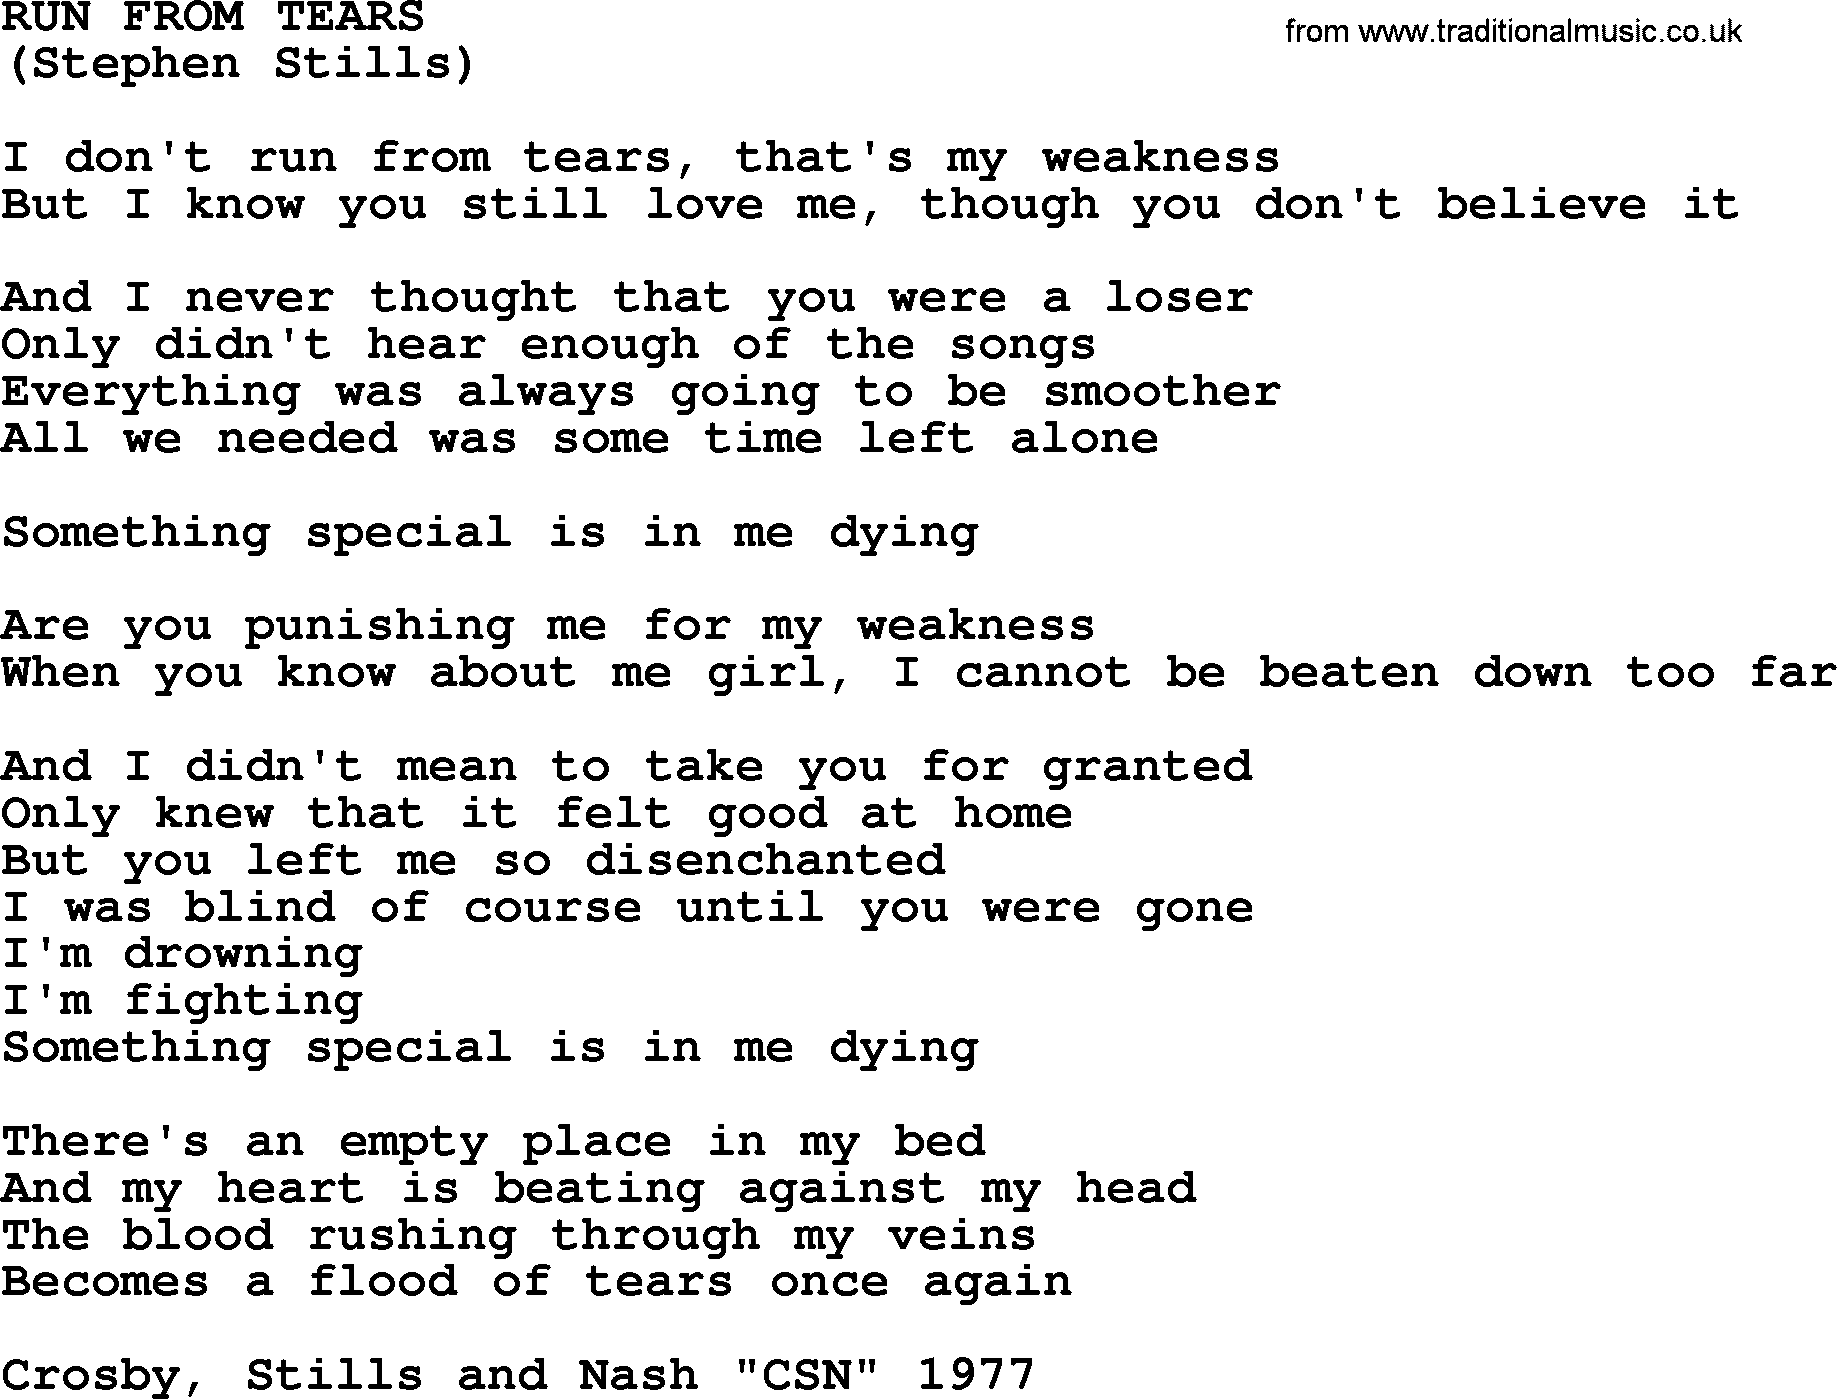 The Byrds song Run From Tears, lyrics